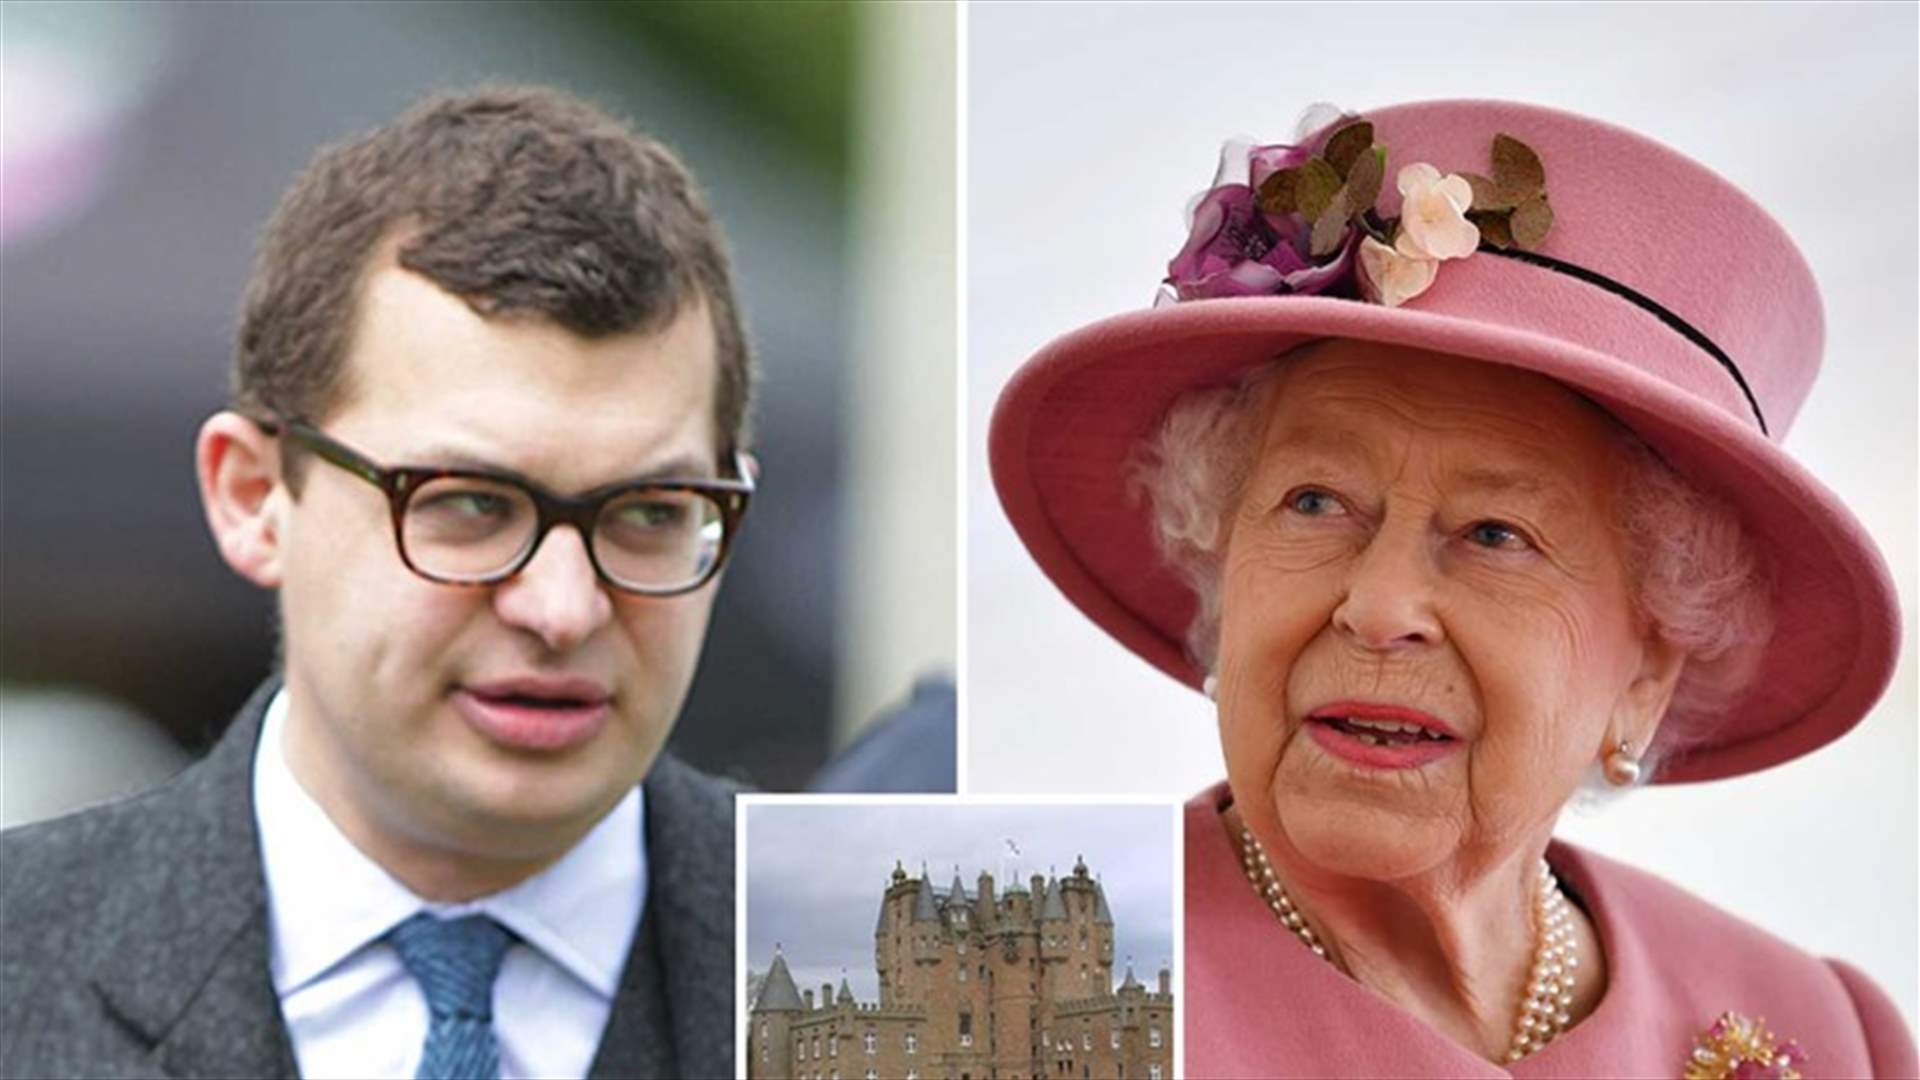 إدانة أحد أقارب الملكة إليزابيث بالاعتداء الجنسي على امرأة